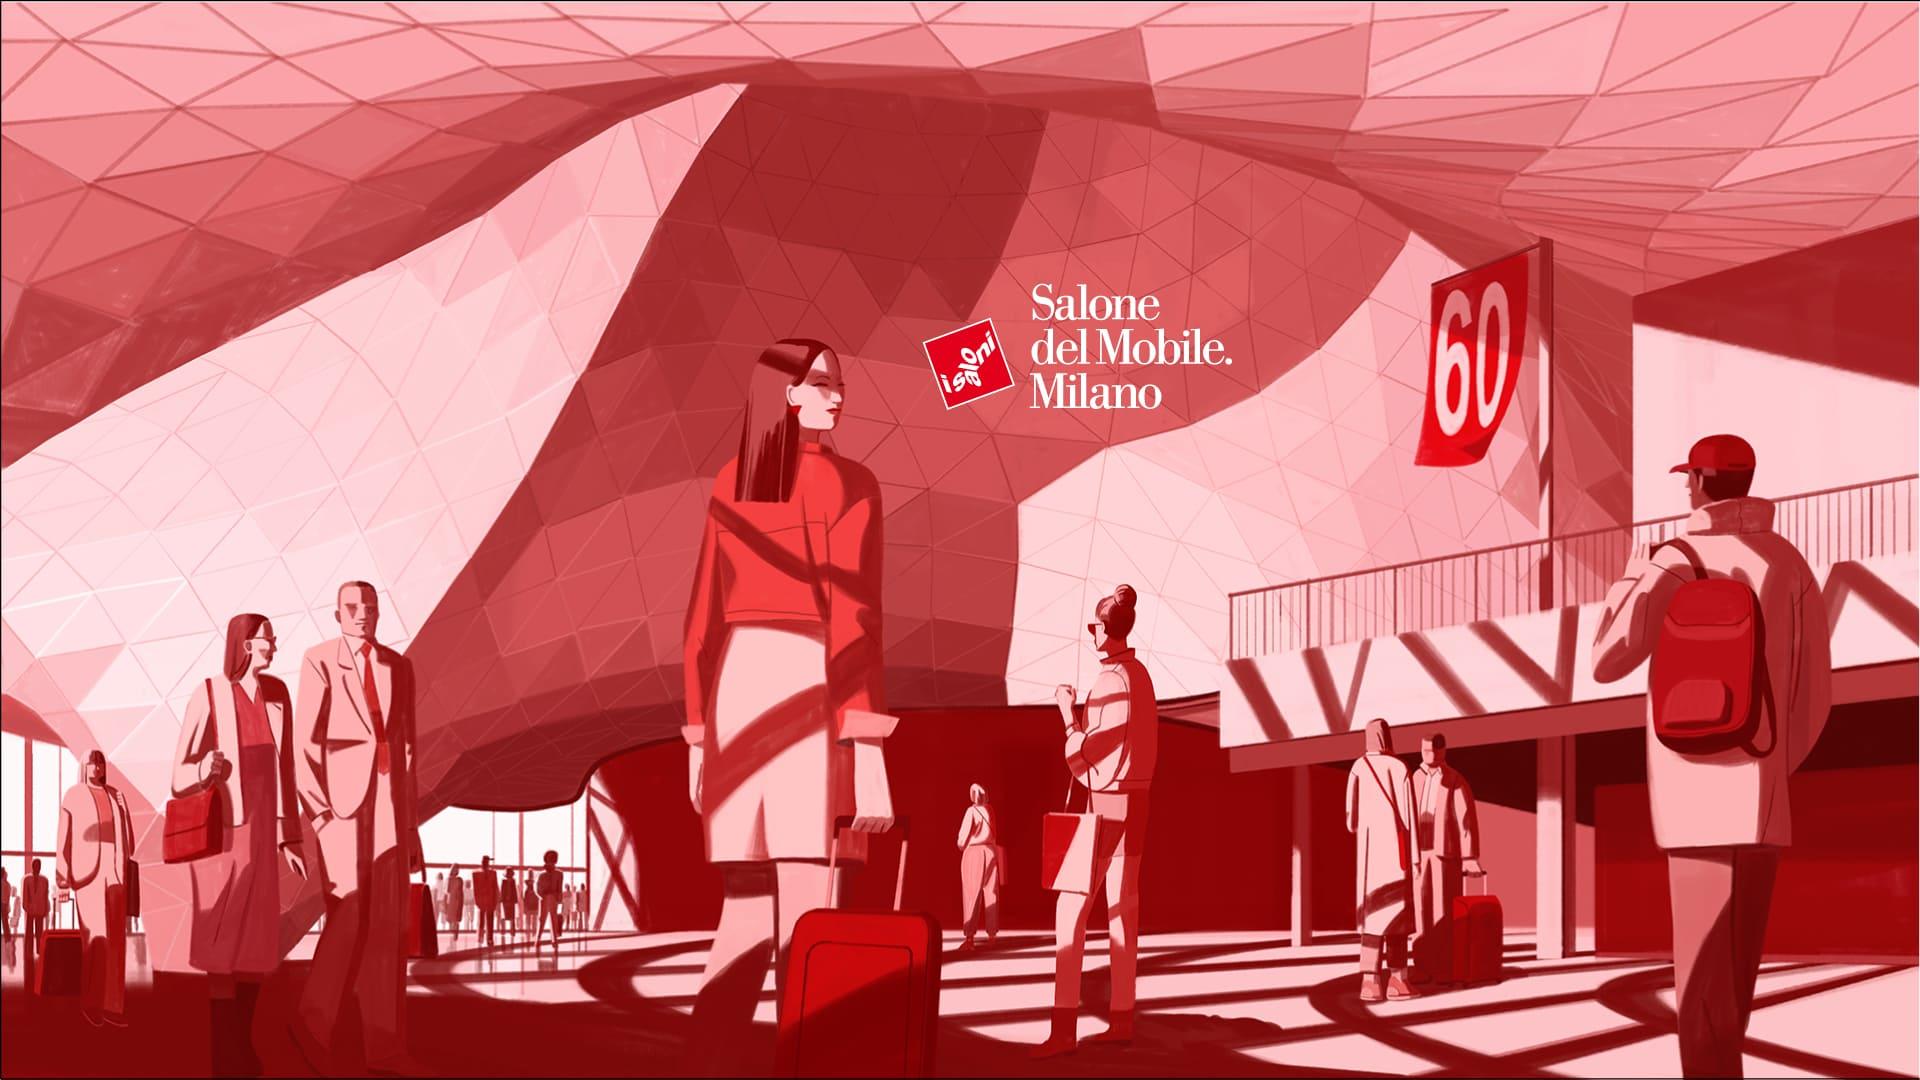 Salone del Mobile.Milano 2022 Announces New Dates for its 60th Edition